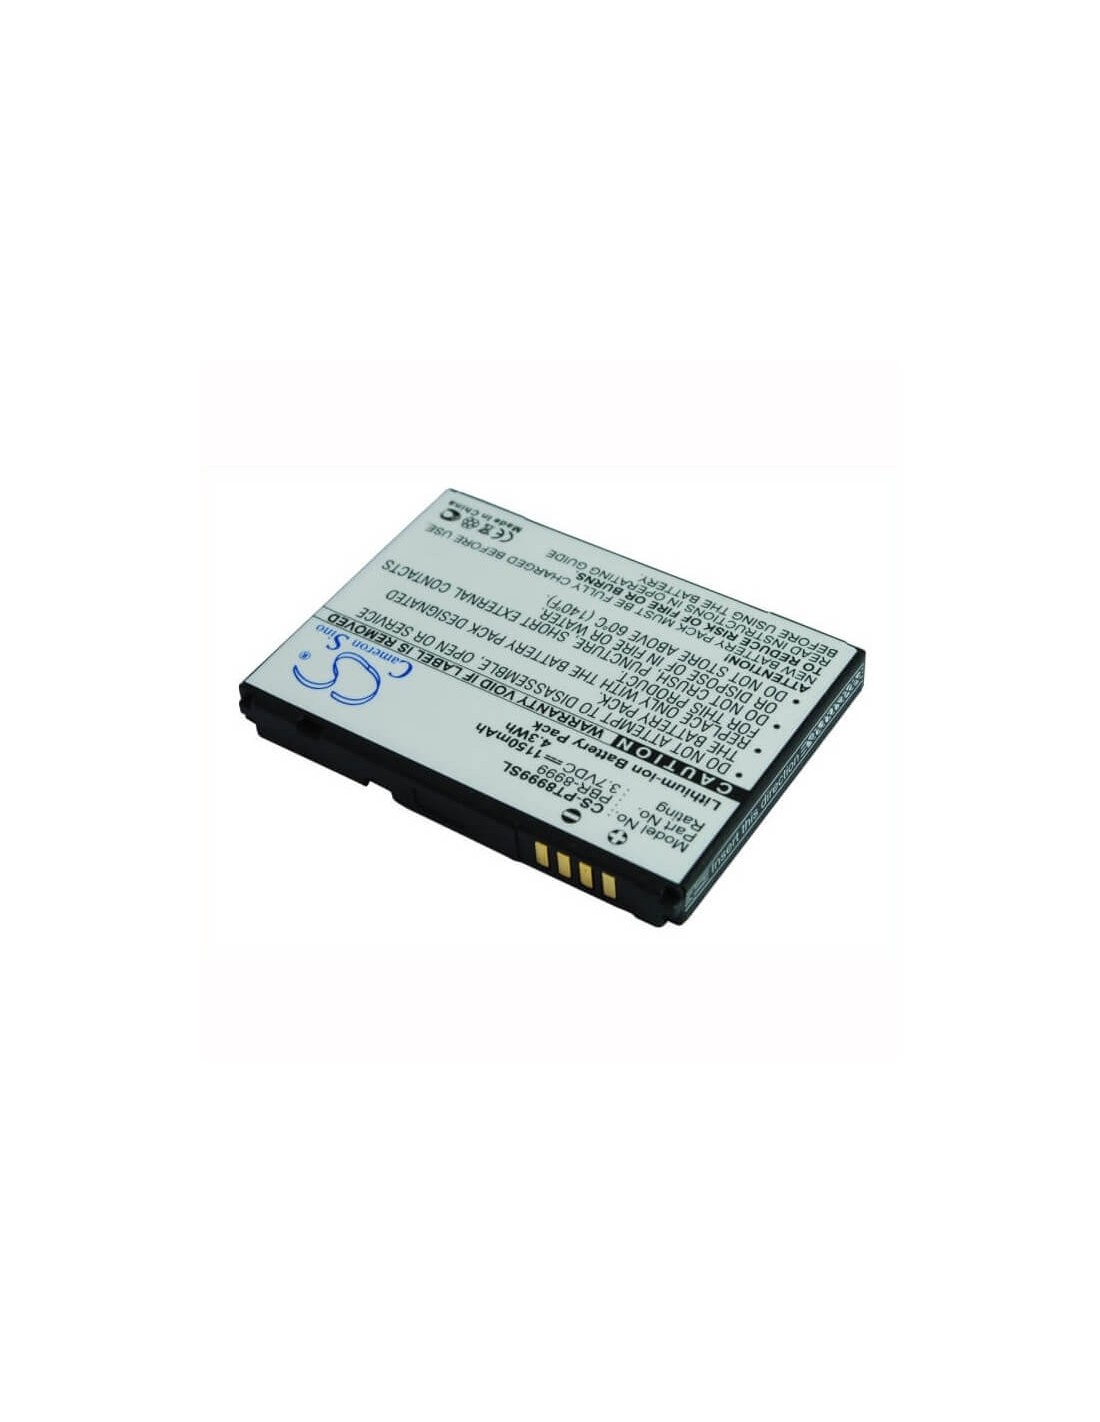 Battery for Pantech CDM-8999, CDM-8999 Crux 3.7V, 1150mAh - 4.26Wh